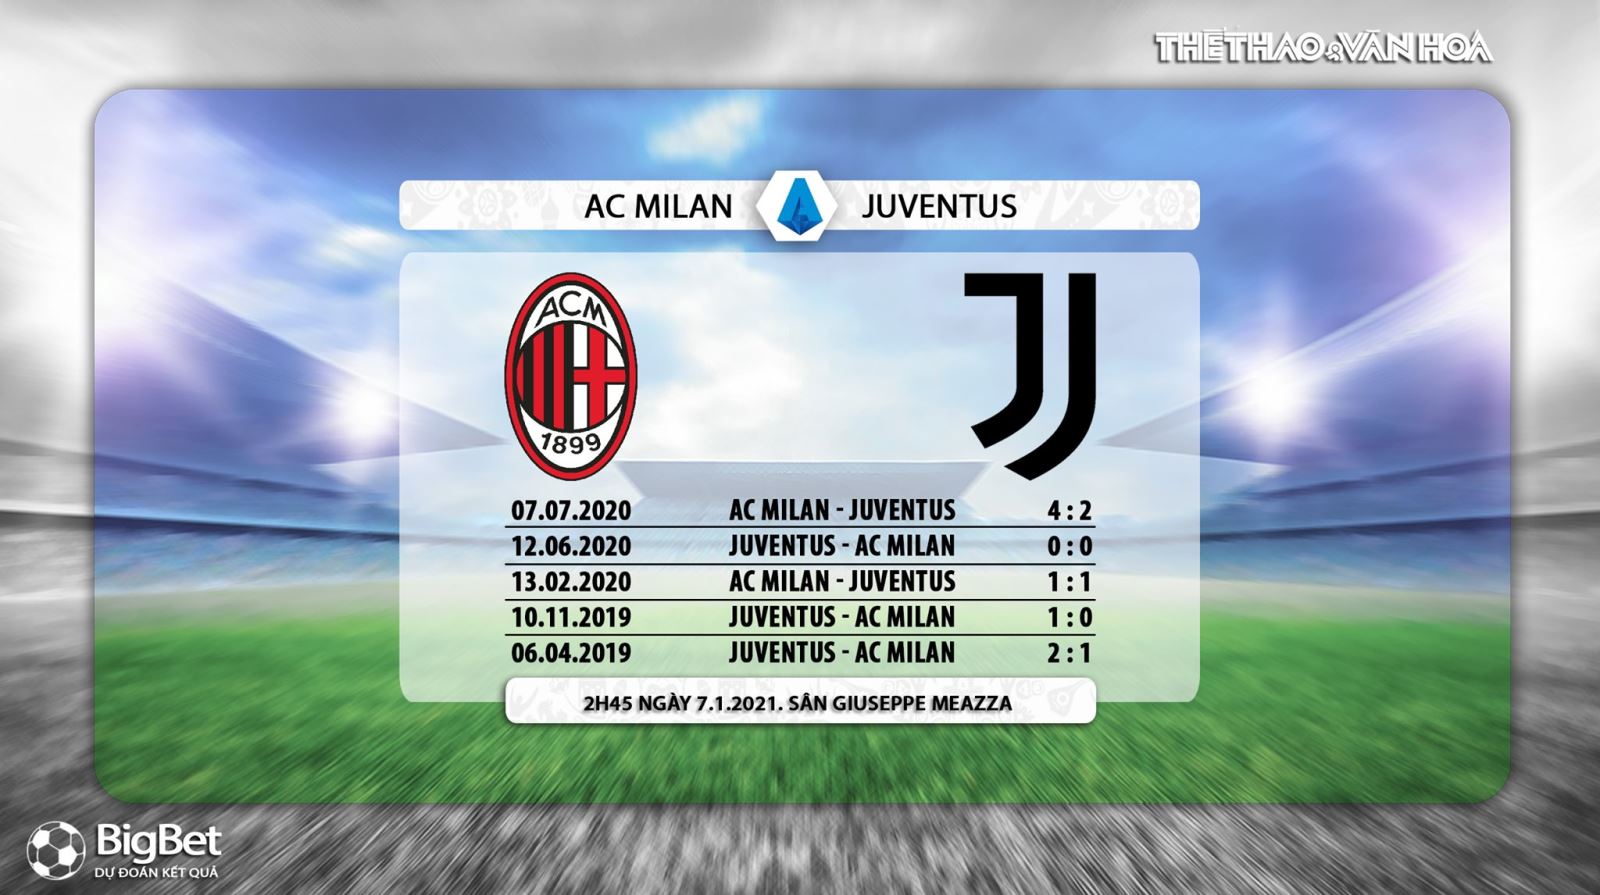 Nhận định bóng đá AC Milan vs Juventus, AC Milan vs Juventus, ac milan, juventus, bóng đá, nhận định bóng đá bóng đá, trực tiếp bóng đá, lịch thi đấu, nhận định